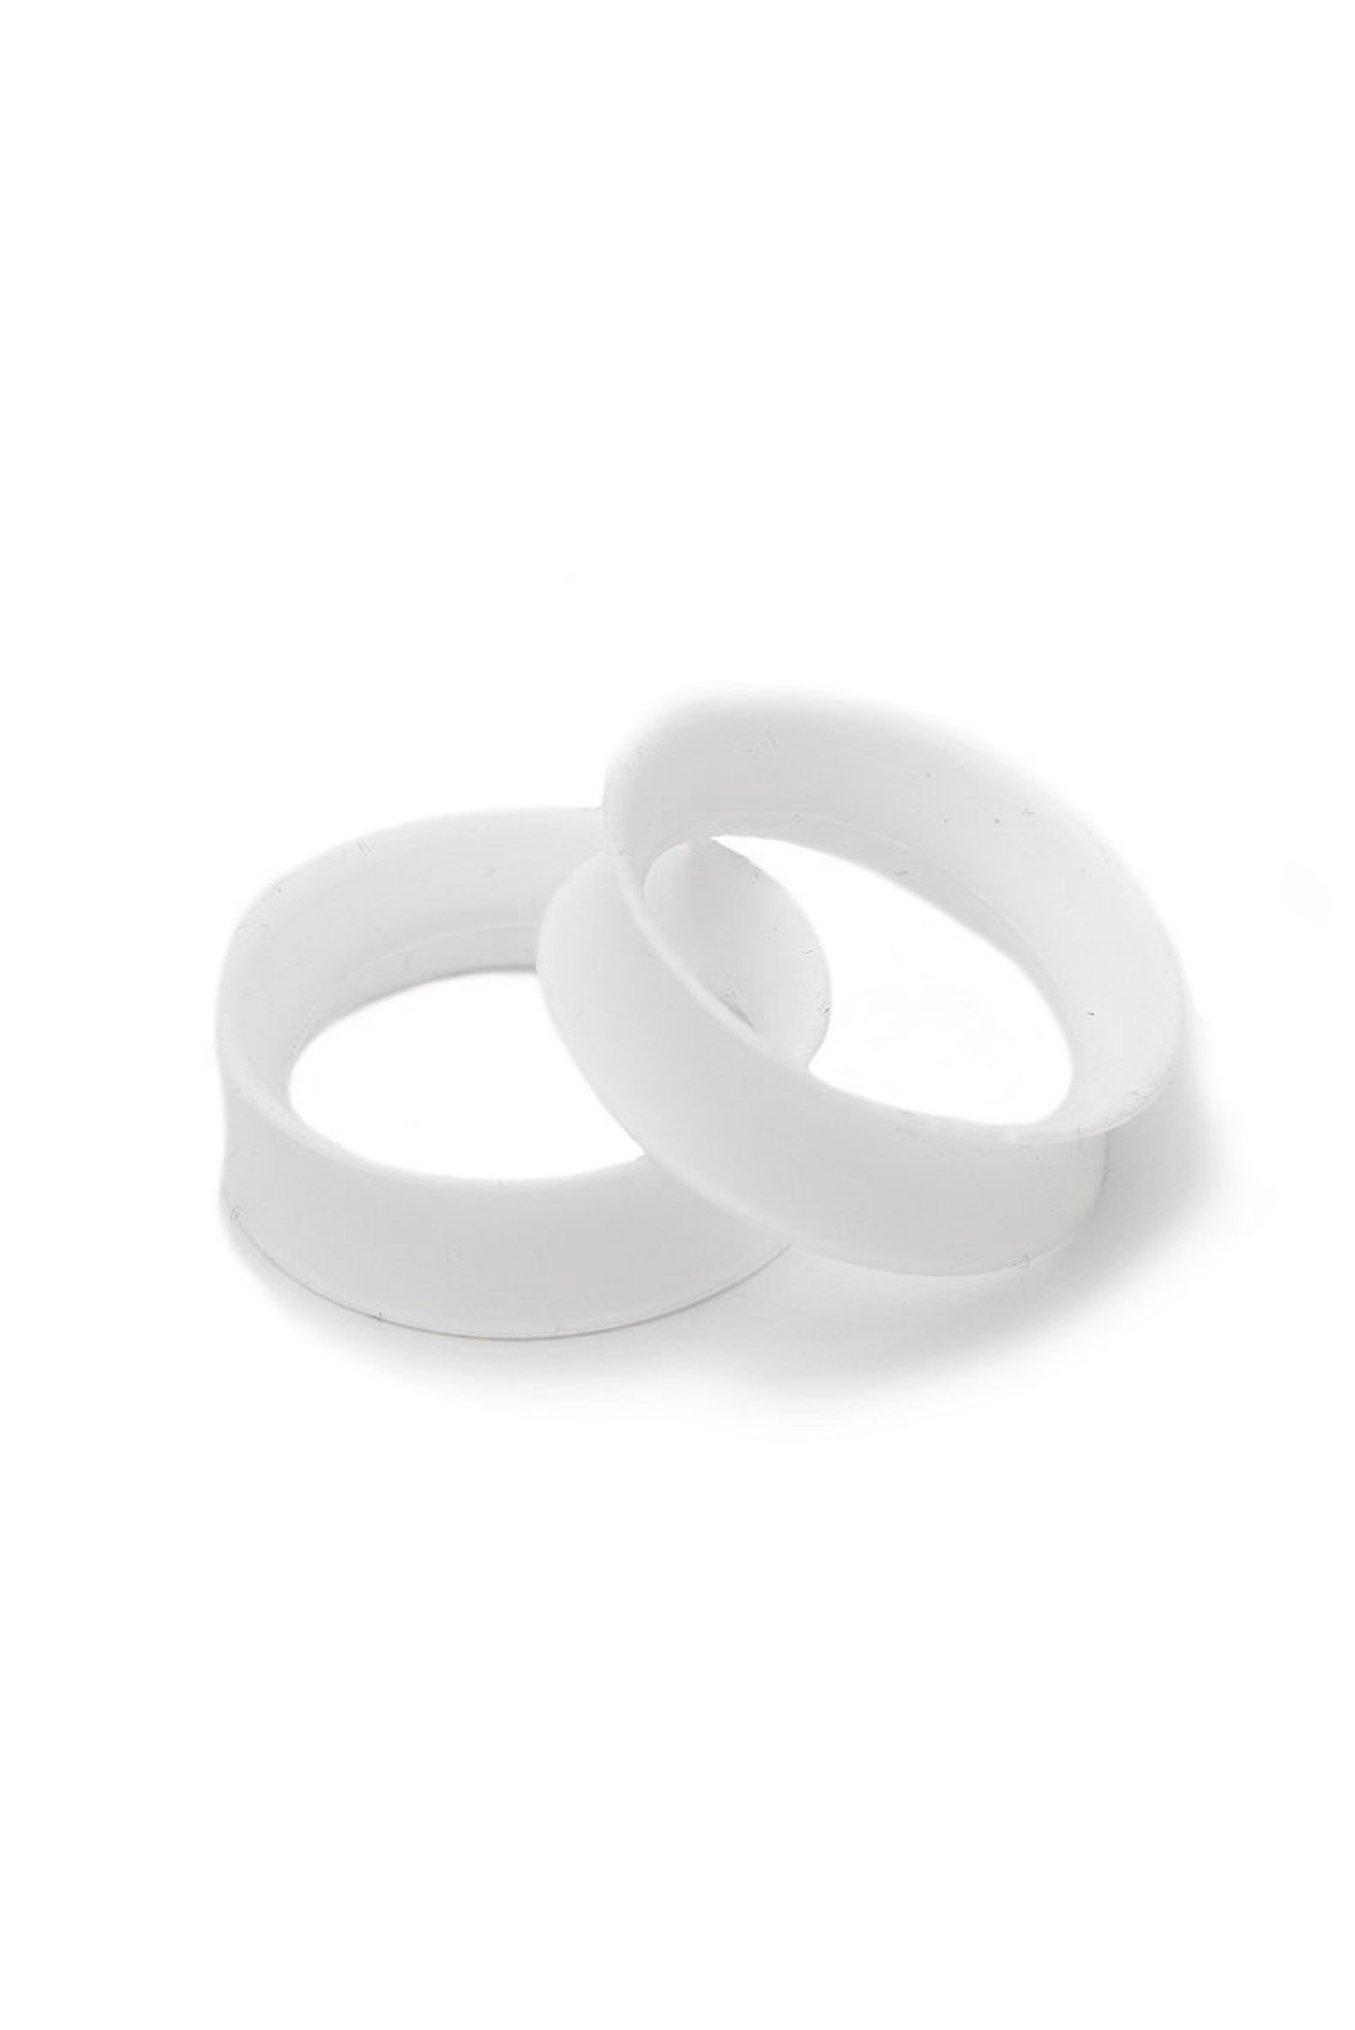 Kaos Softwear White Earskin Eyelet Plug 2 Pack, WHITE, hi-res